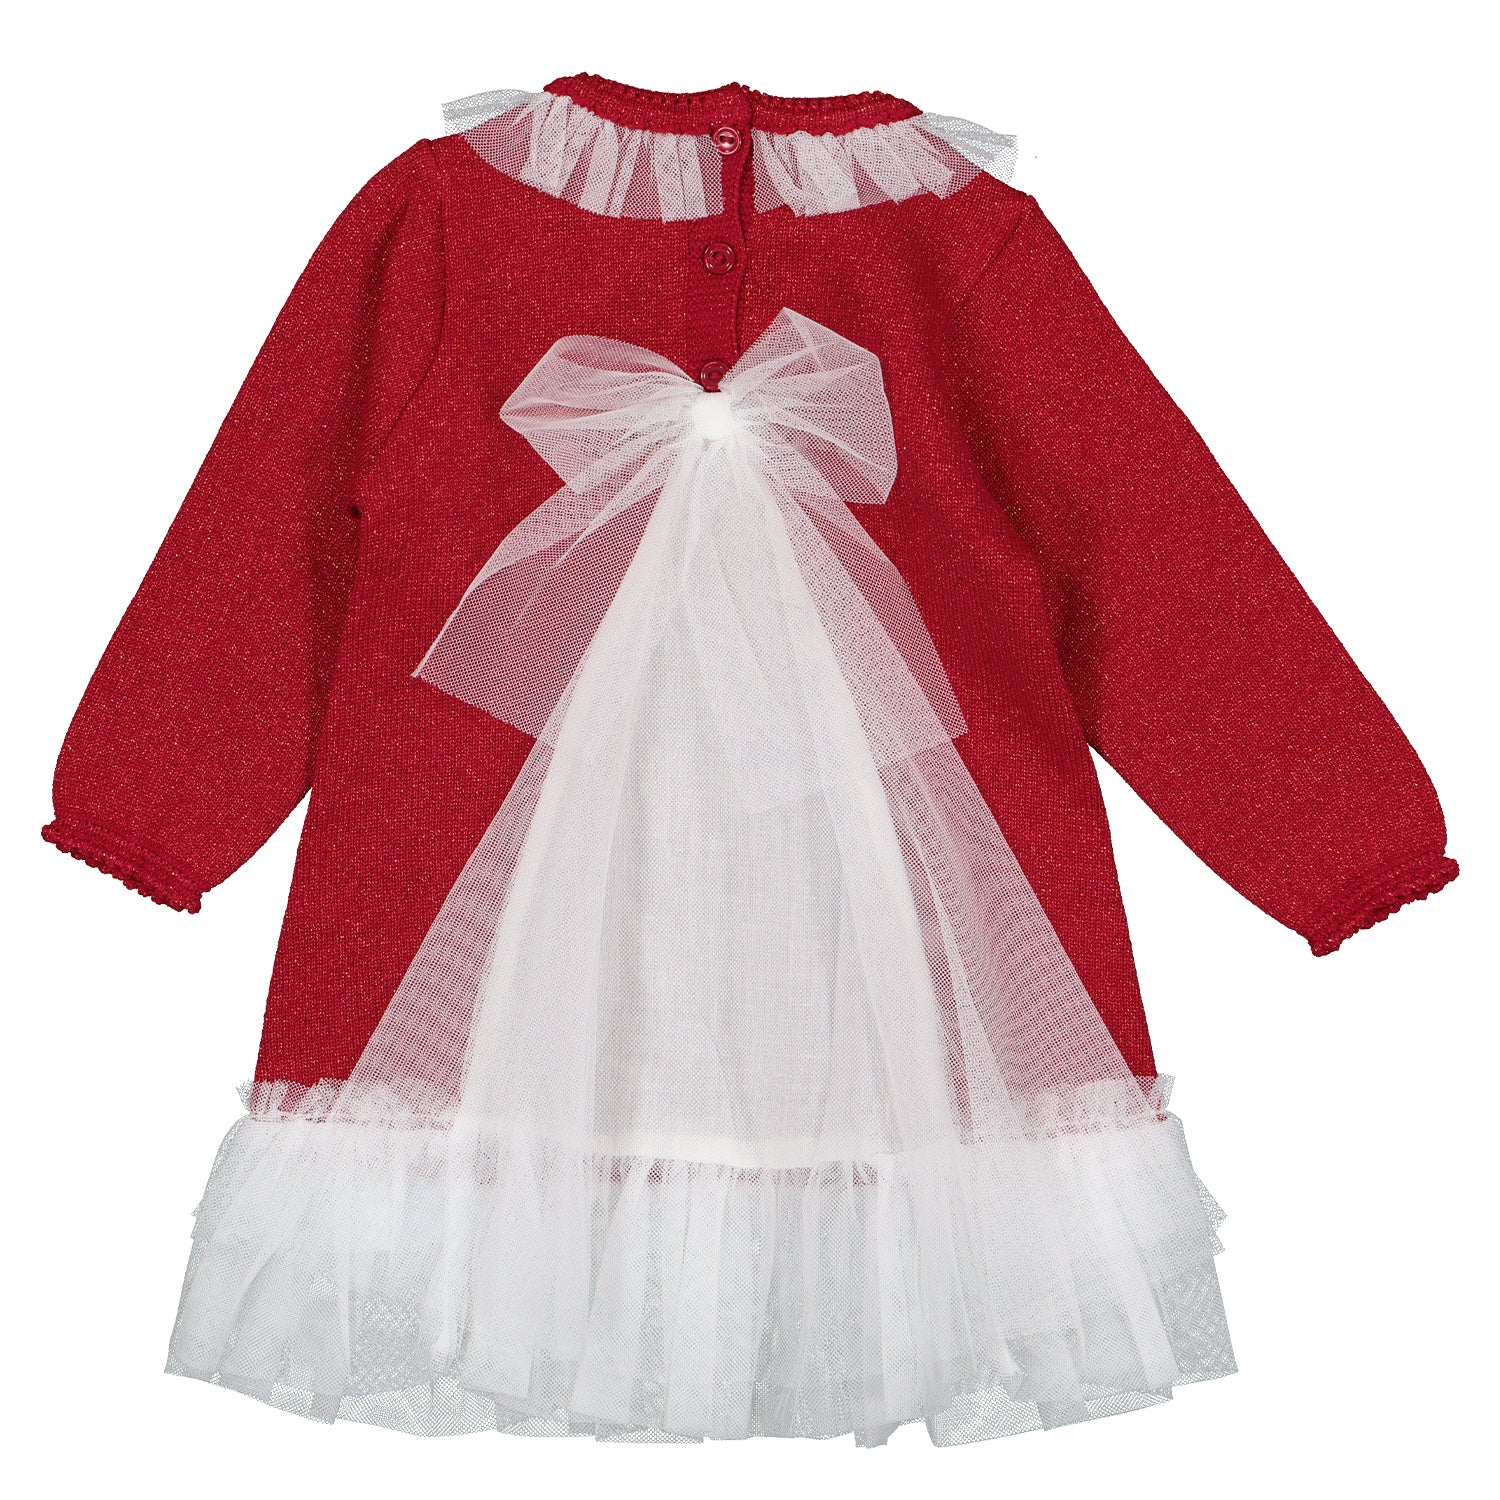 Long Sleeve Red Glitter Tulle Dress